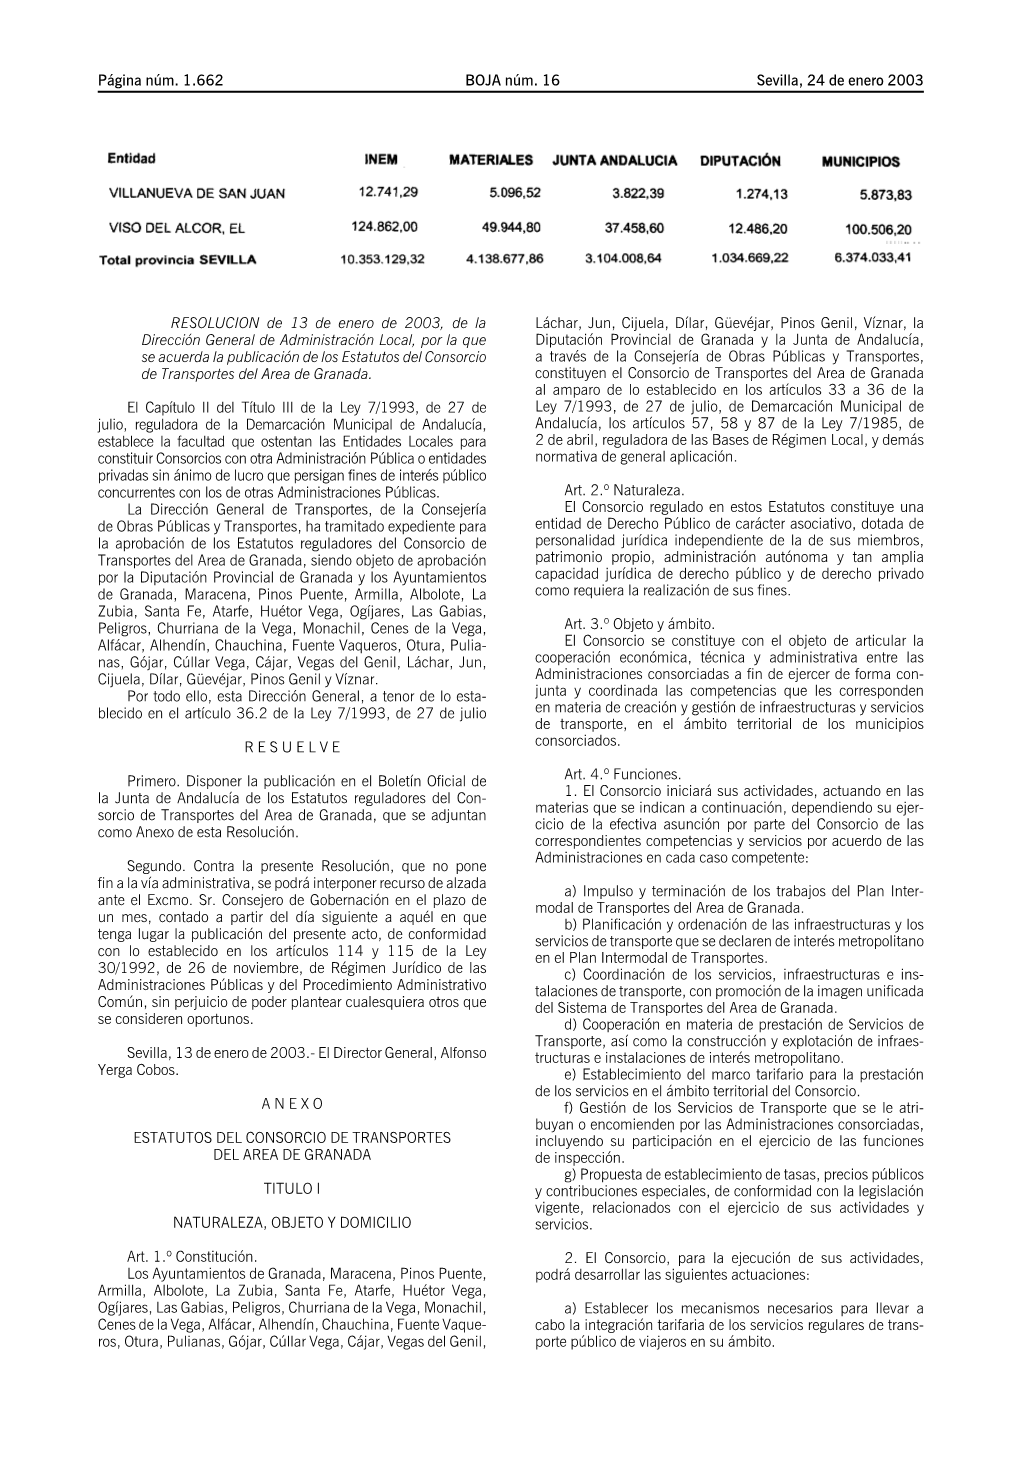 Estatutos Del Consorcio a Través De La Consejería De Obras Públicasytransportes, De Transportes Del Area De Granada